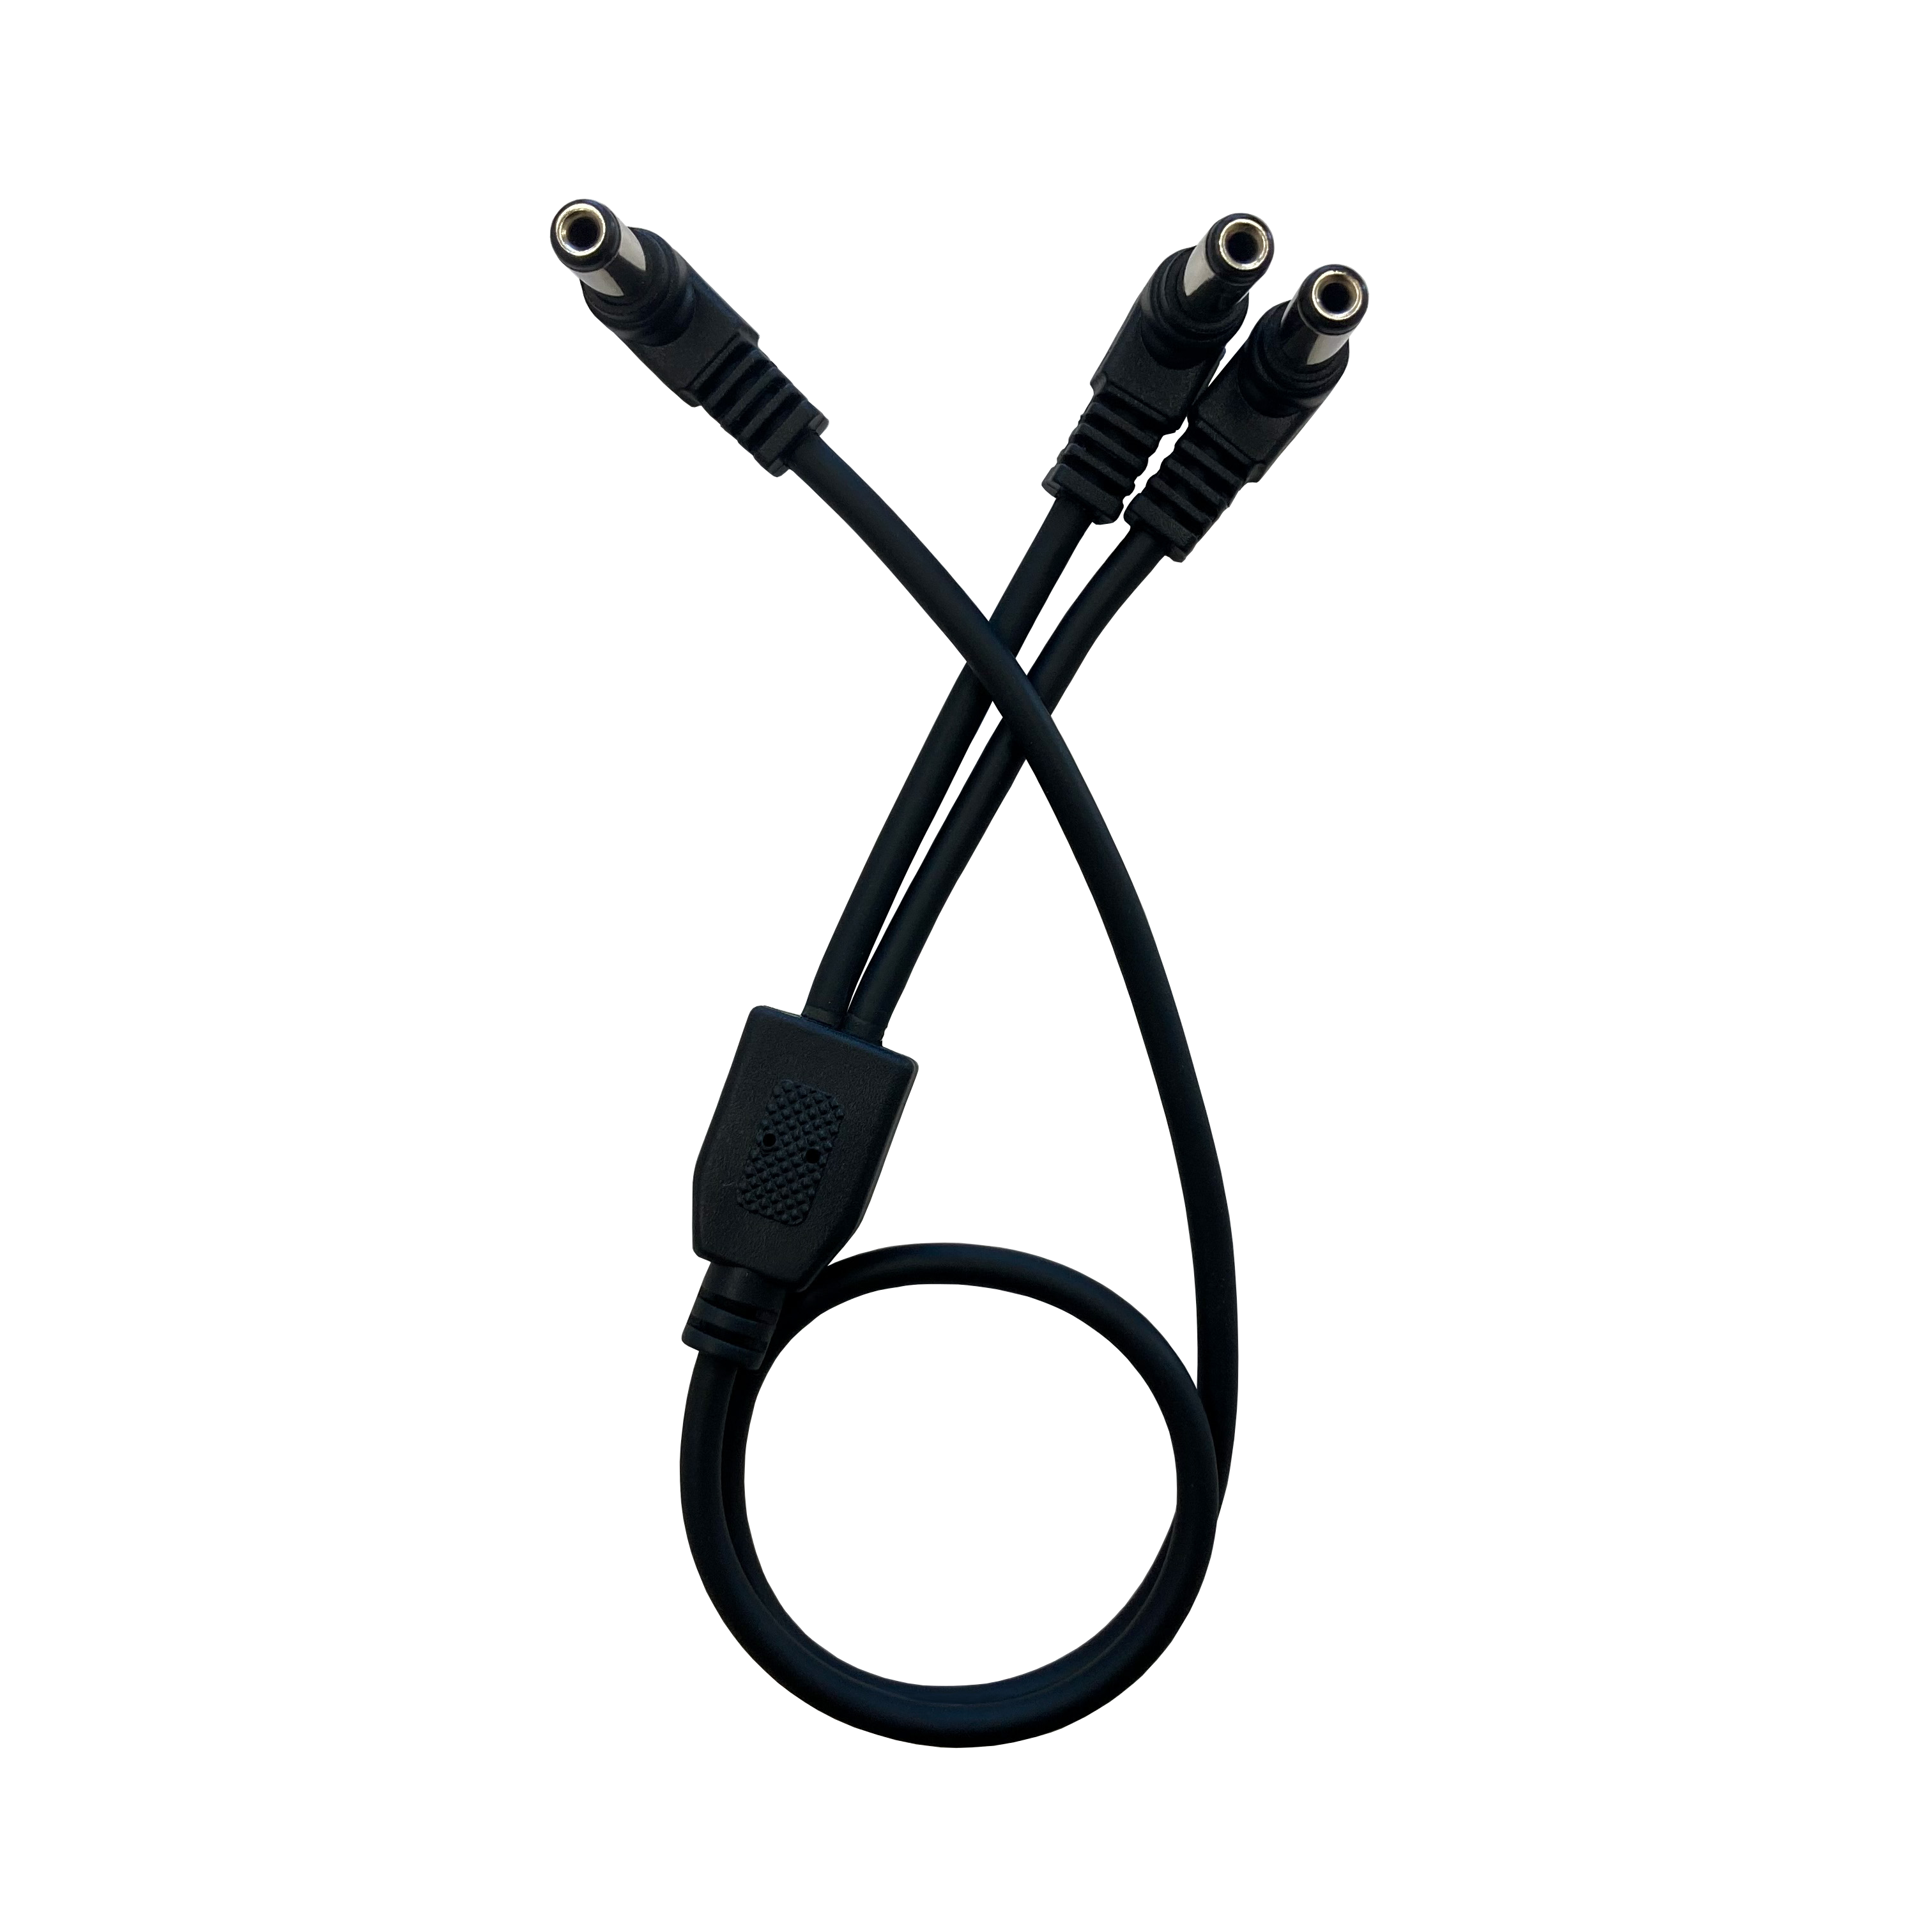 CAJ – Current Doubler Cable / Voltage Doubler Cable